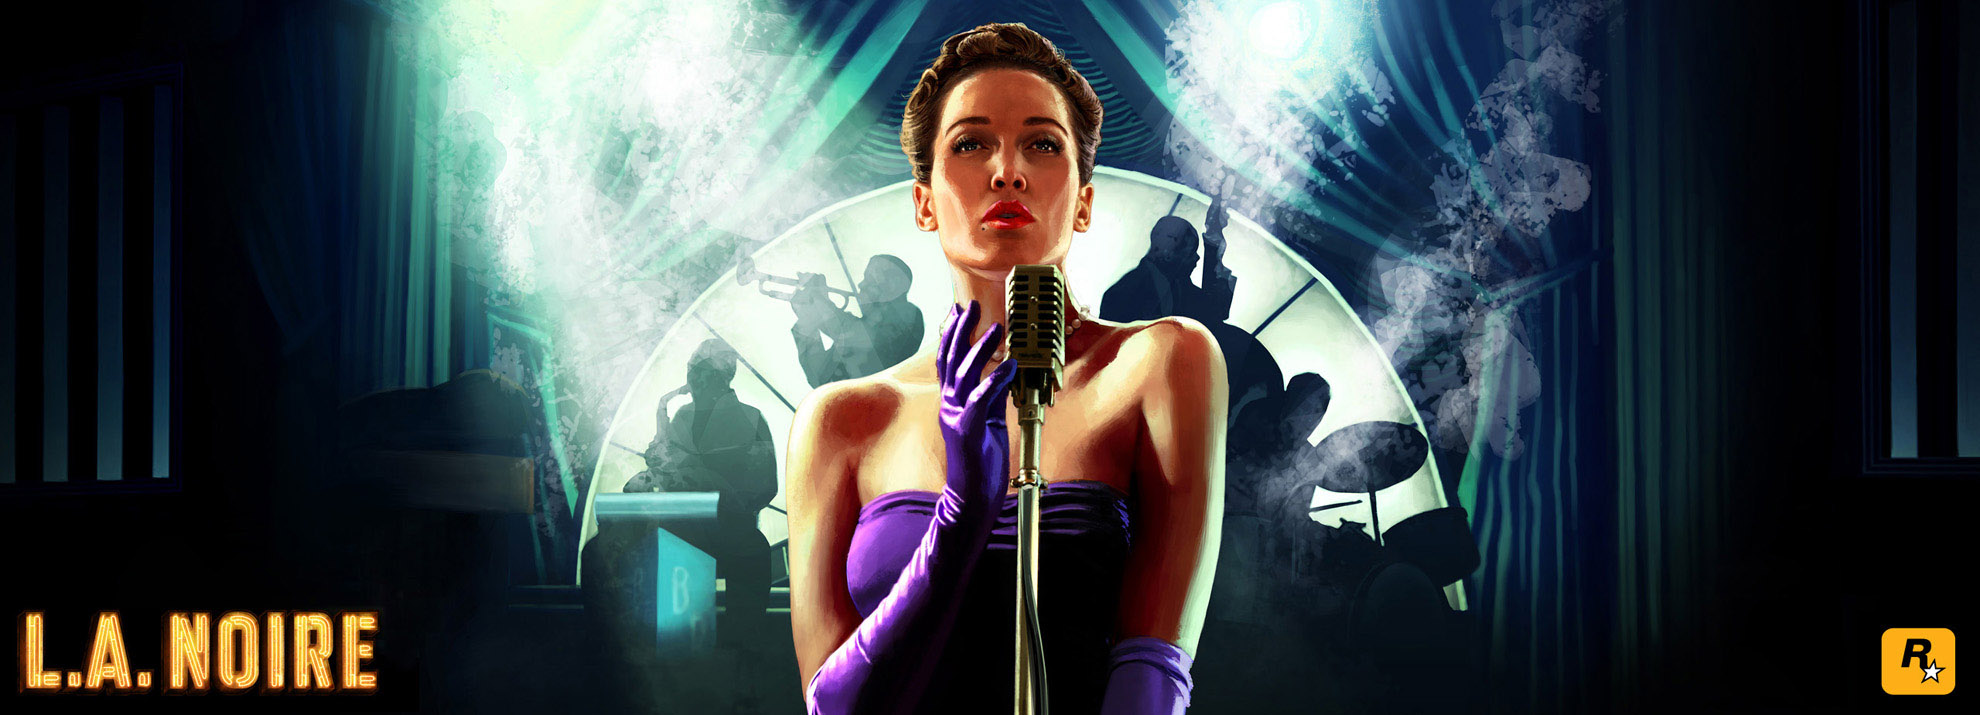 L.A. Noire Official Cover Art Image